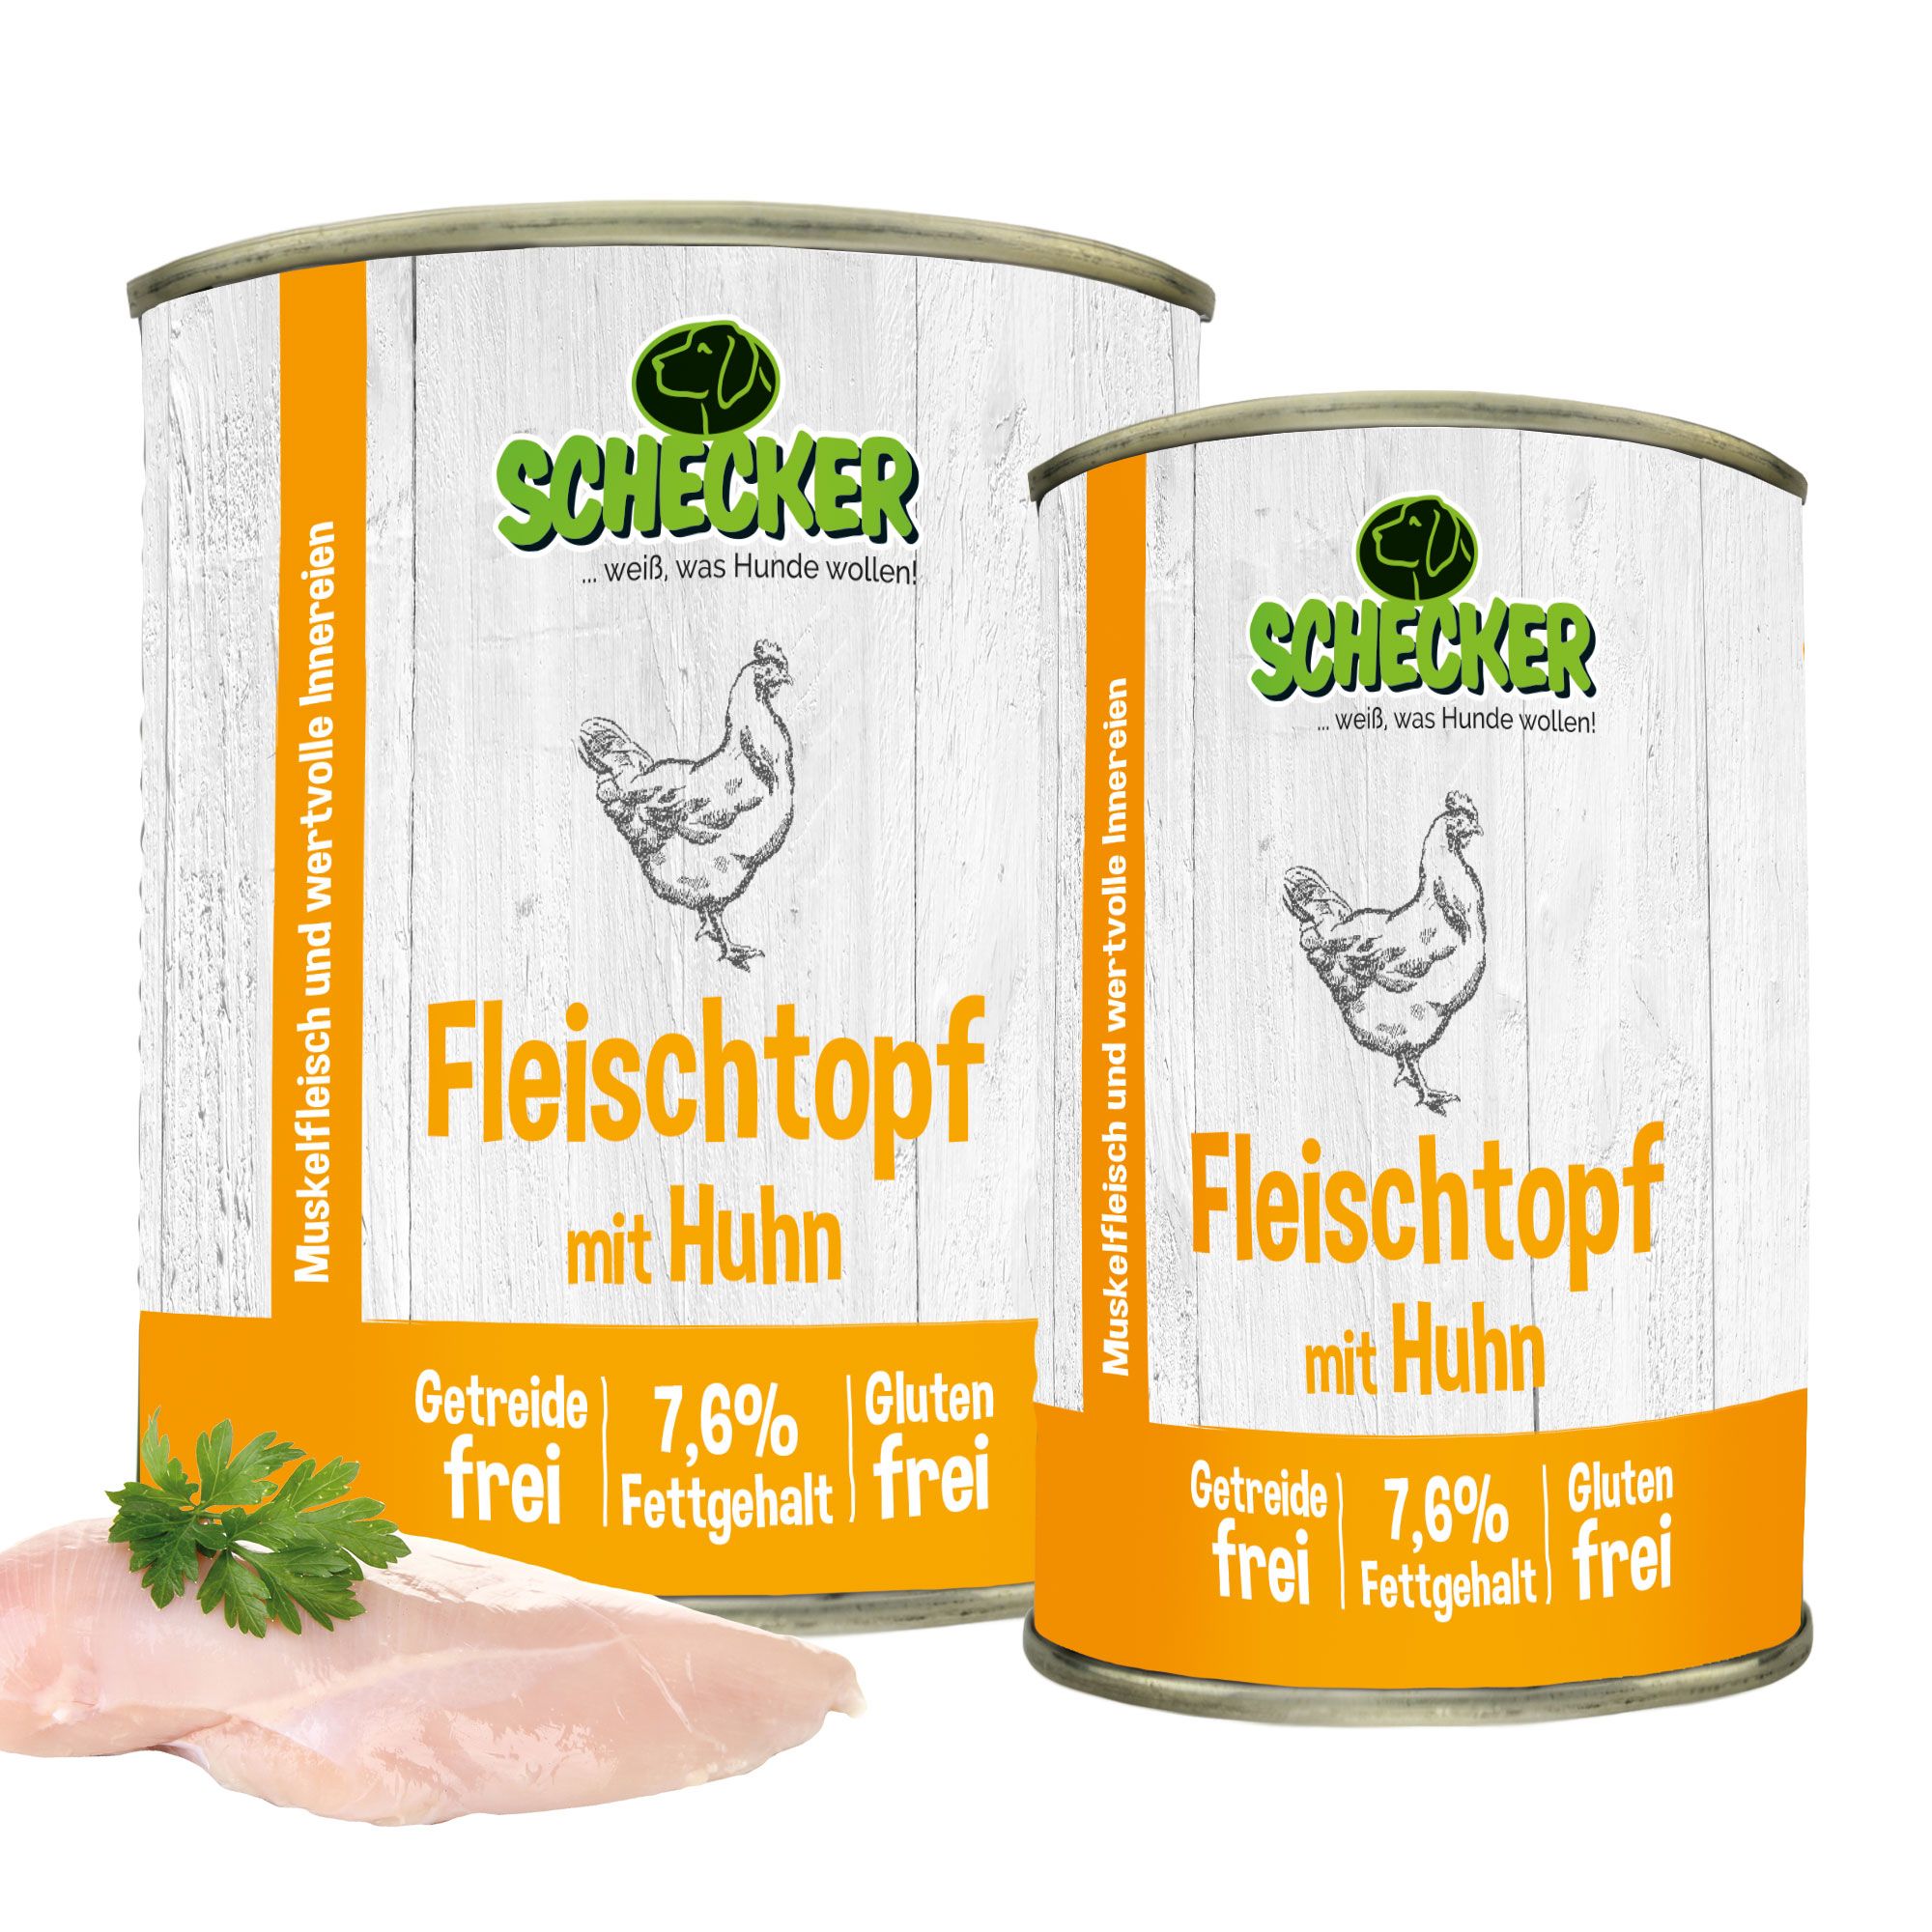 Schecker Fleischtopf mit Huhn - getreidefrei - glutenfrei - in Deutschland herstellt